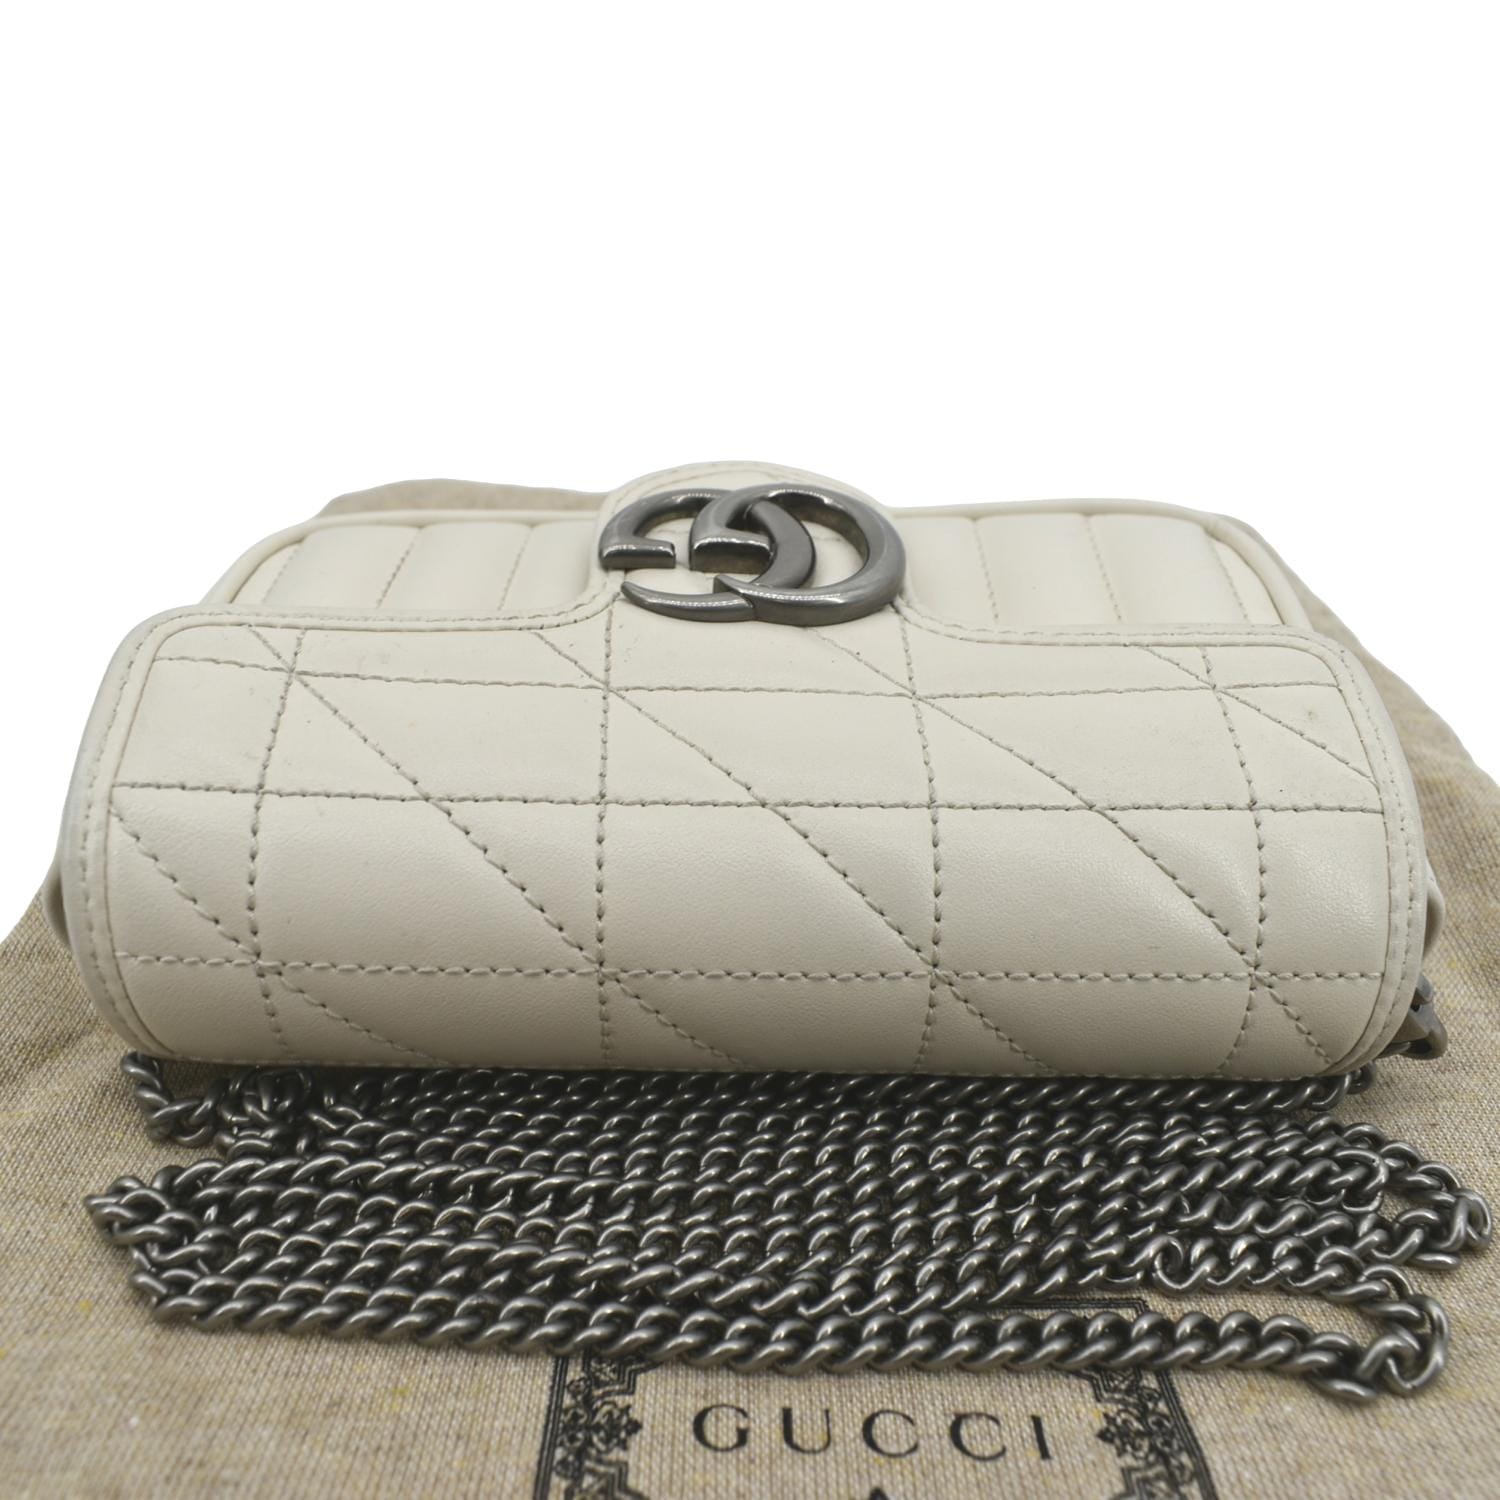 Gucci, Bags, Gg Marmont Super Mini Bag White